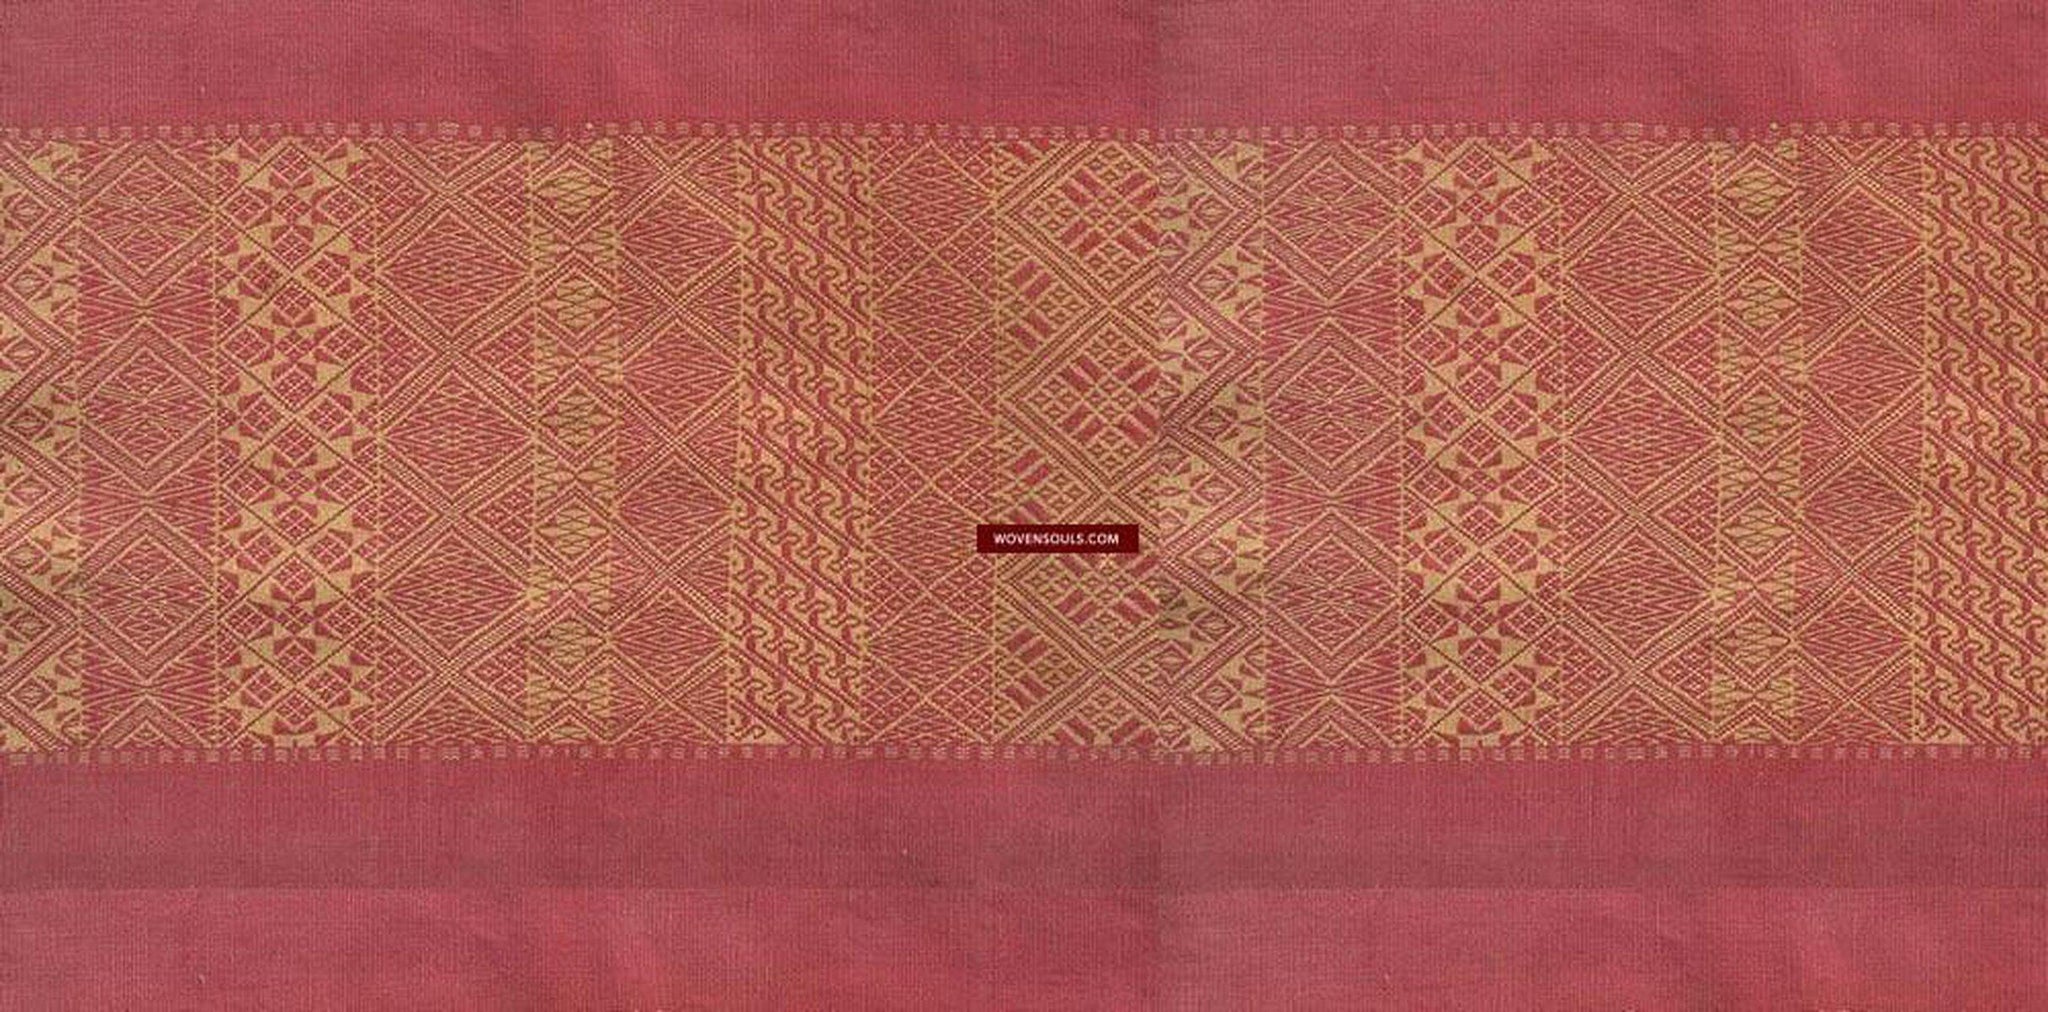 743 SOLD Superfine Antique Myanmar Khami Shawl-WOVENSOULS-Antique-Vintage-Textiles-Art-Decor